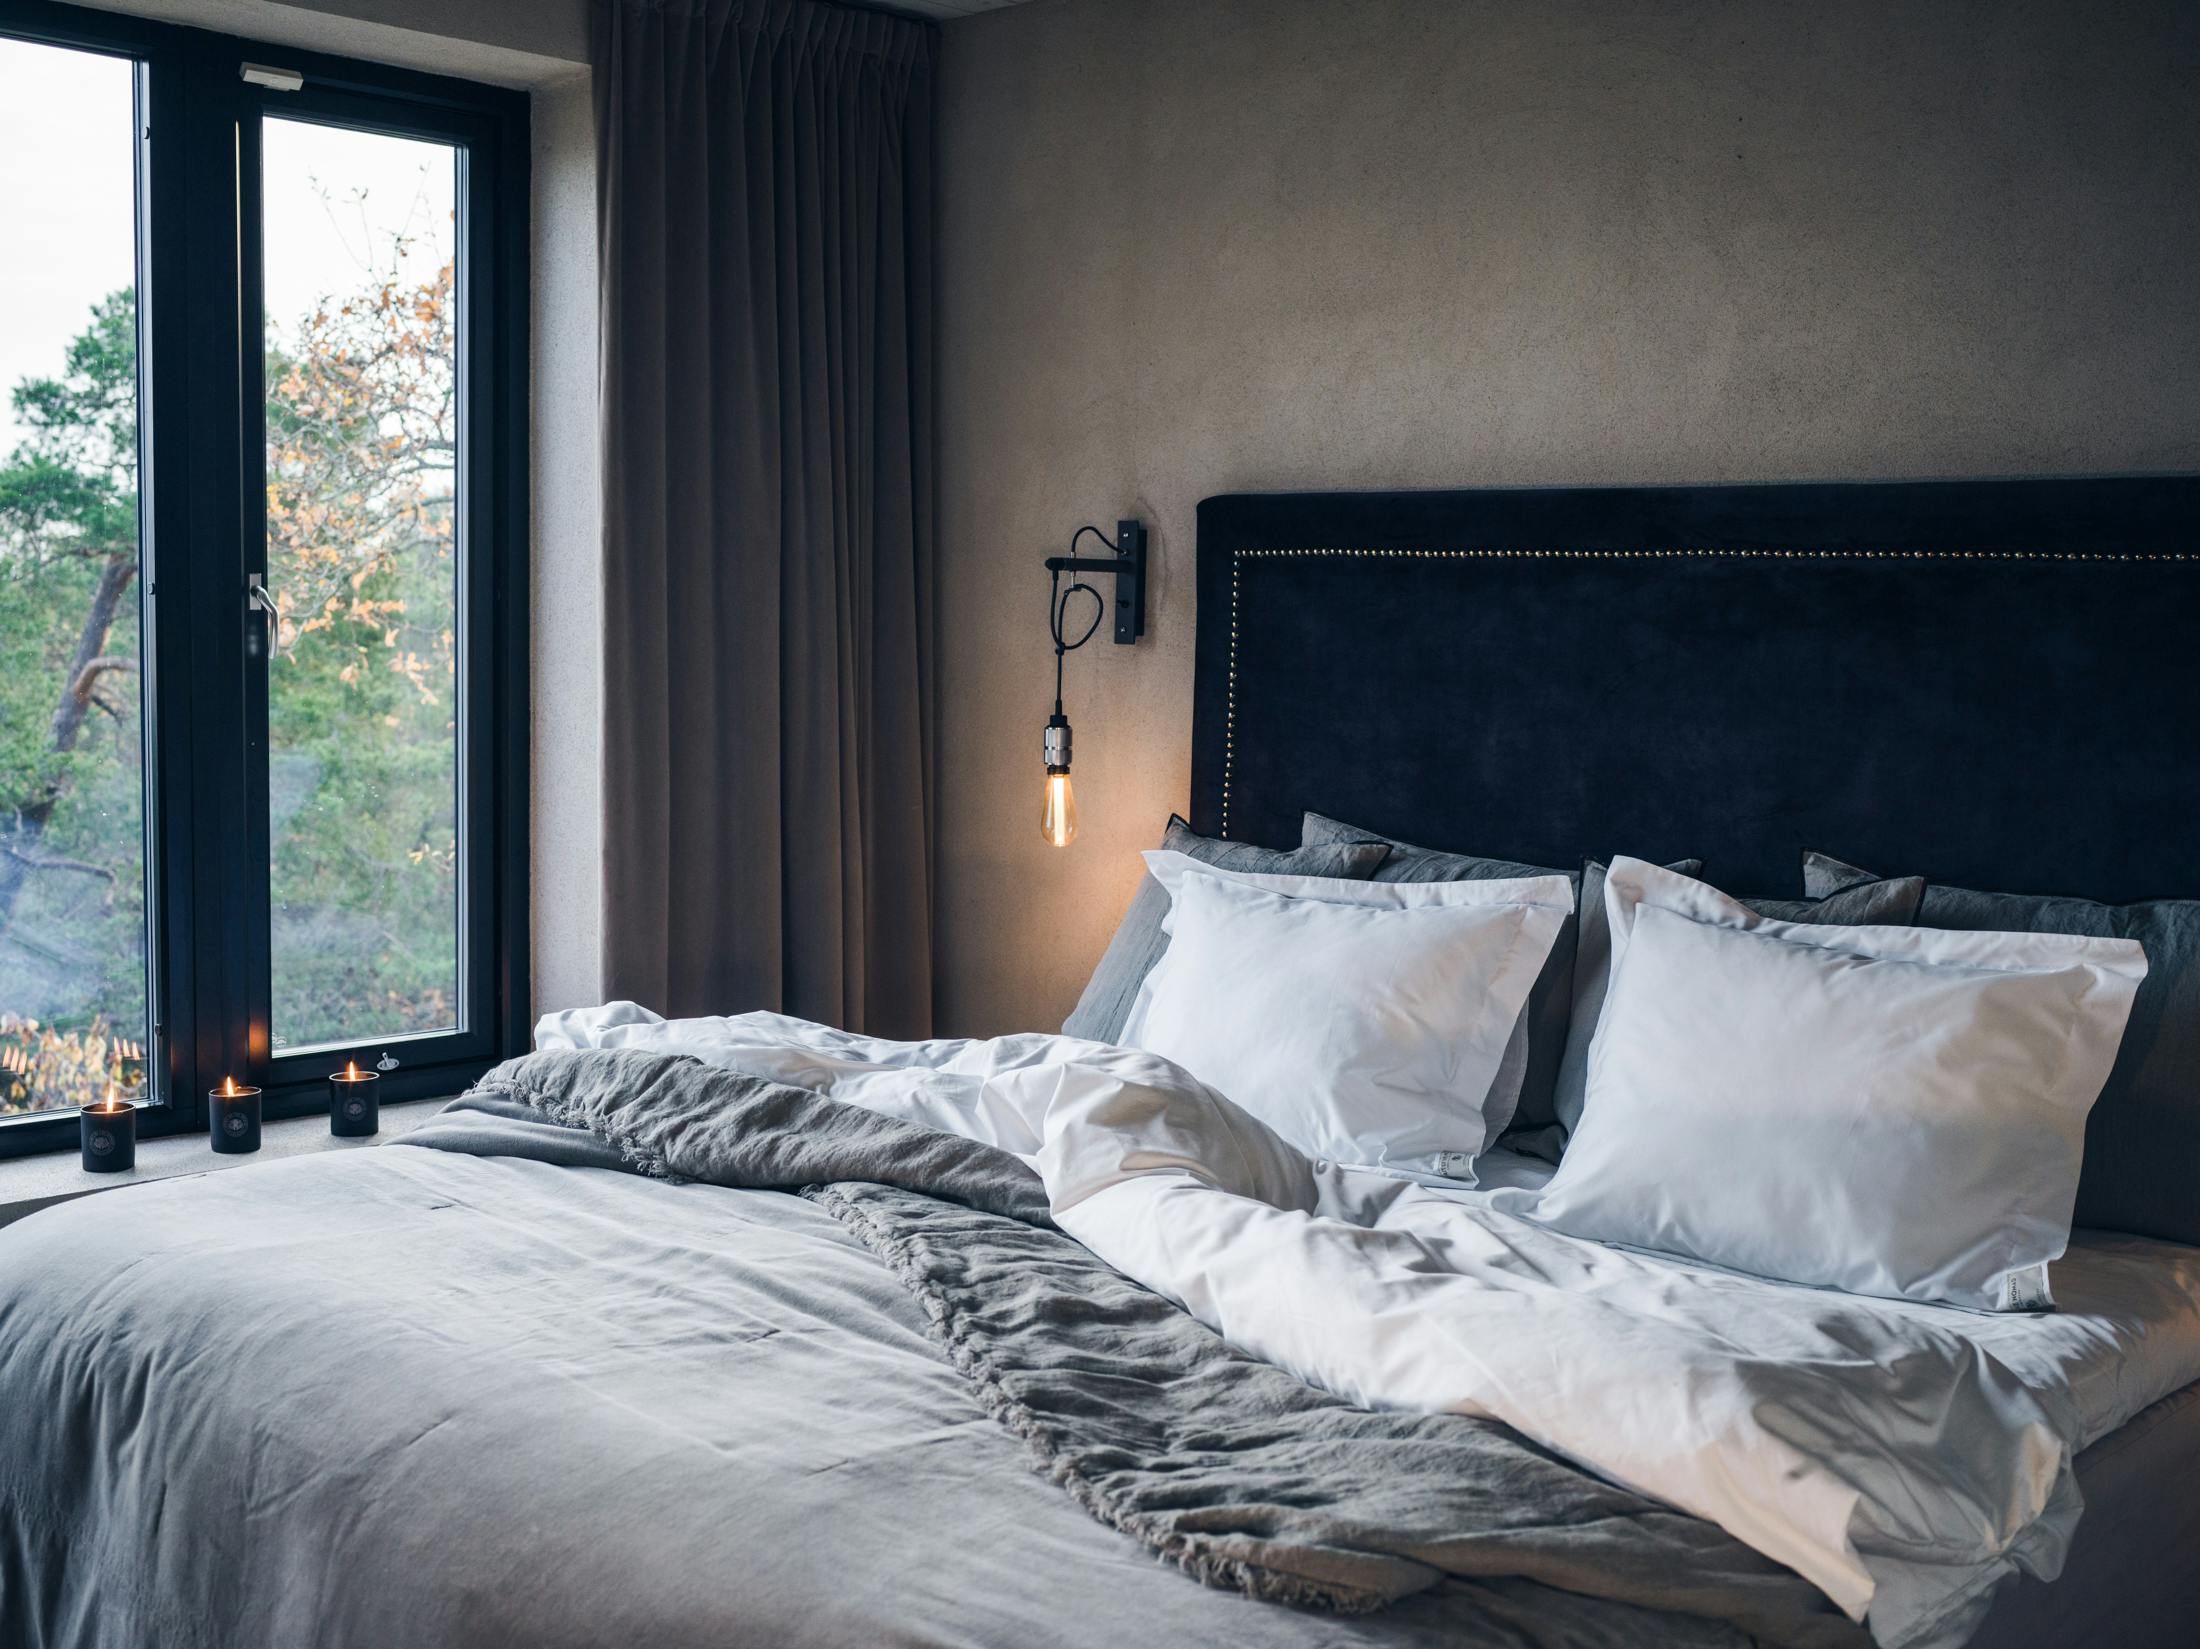 Bett mit weißer und grauer Bettwäsche von Spirit of the Nomad. Im Hintergrund Kerzen